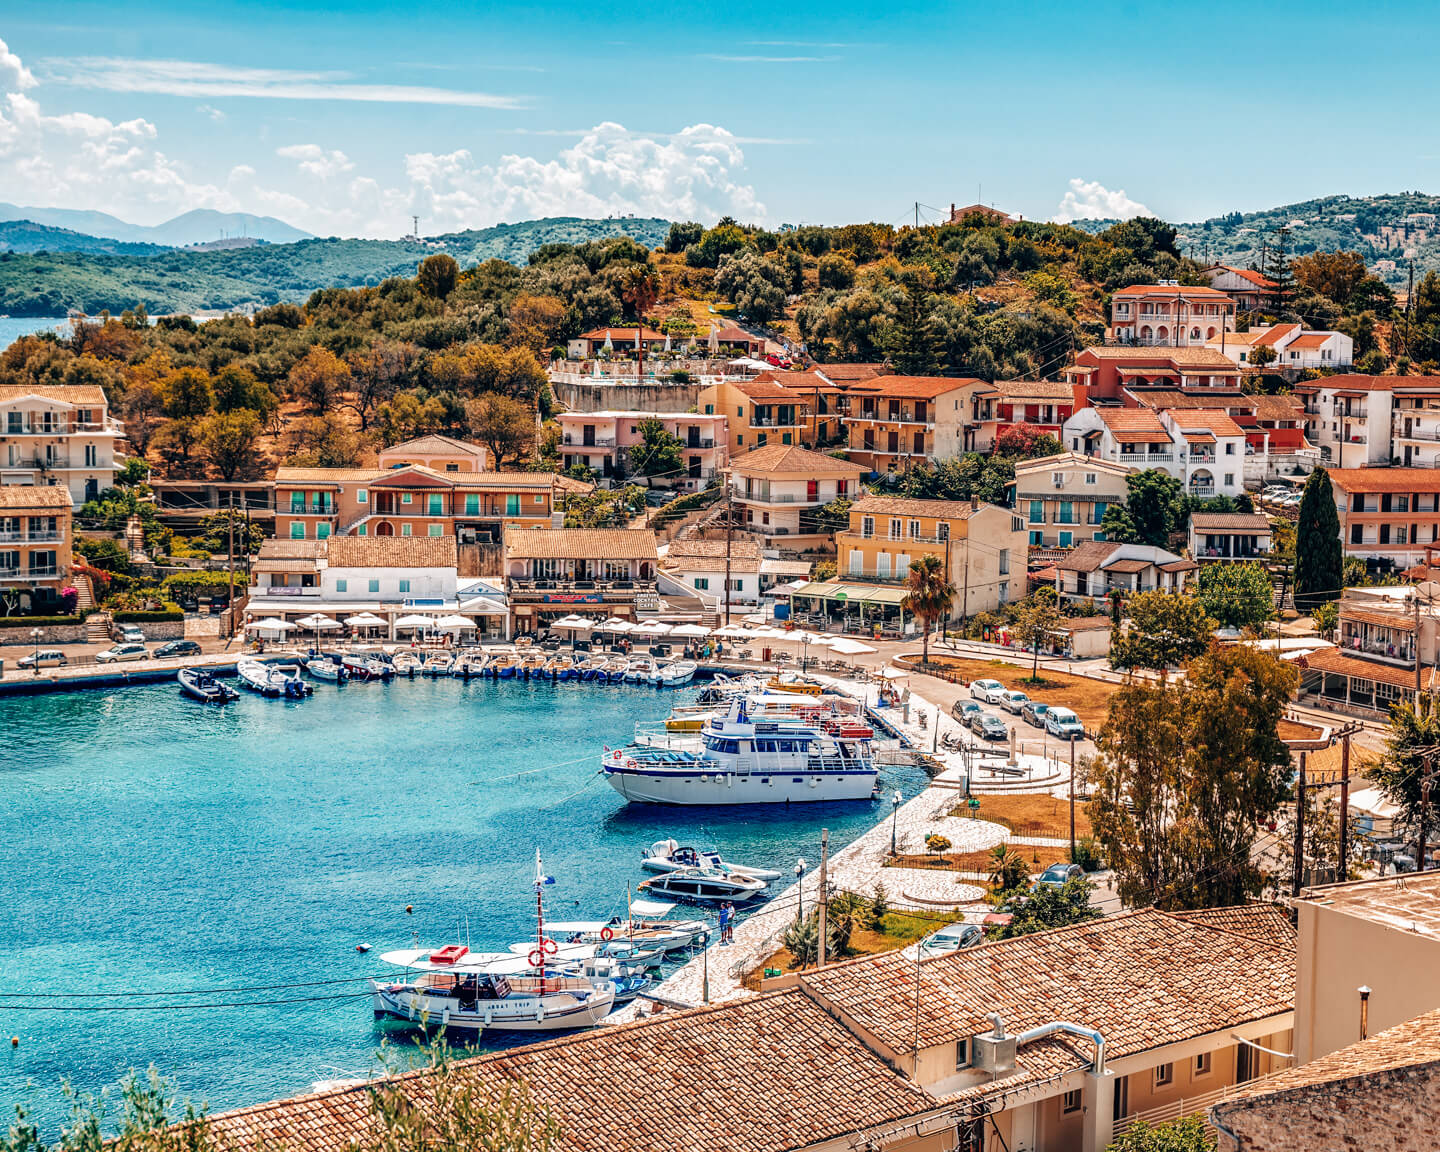 Day 5 Preveza – Igoumentisa – Ferry to Corfu Island